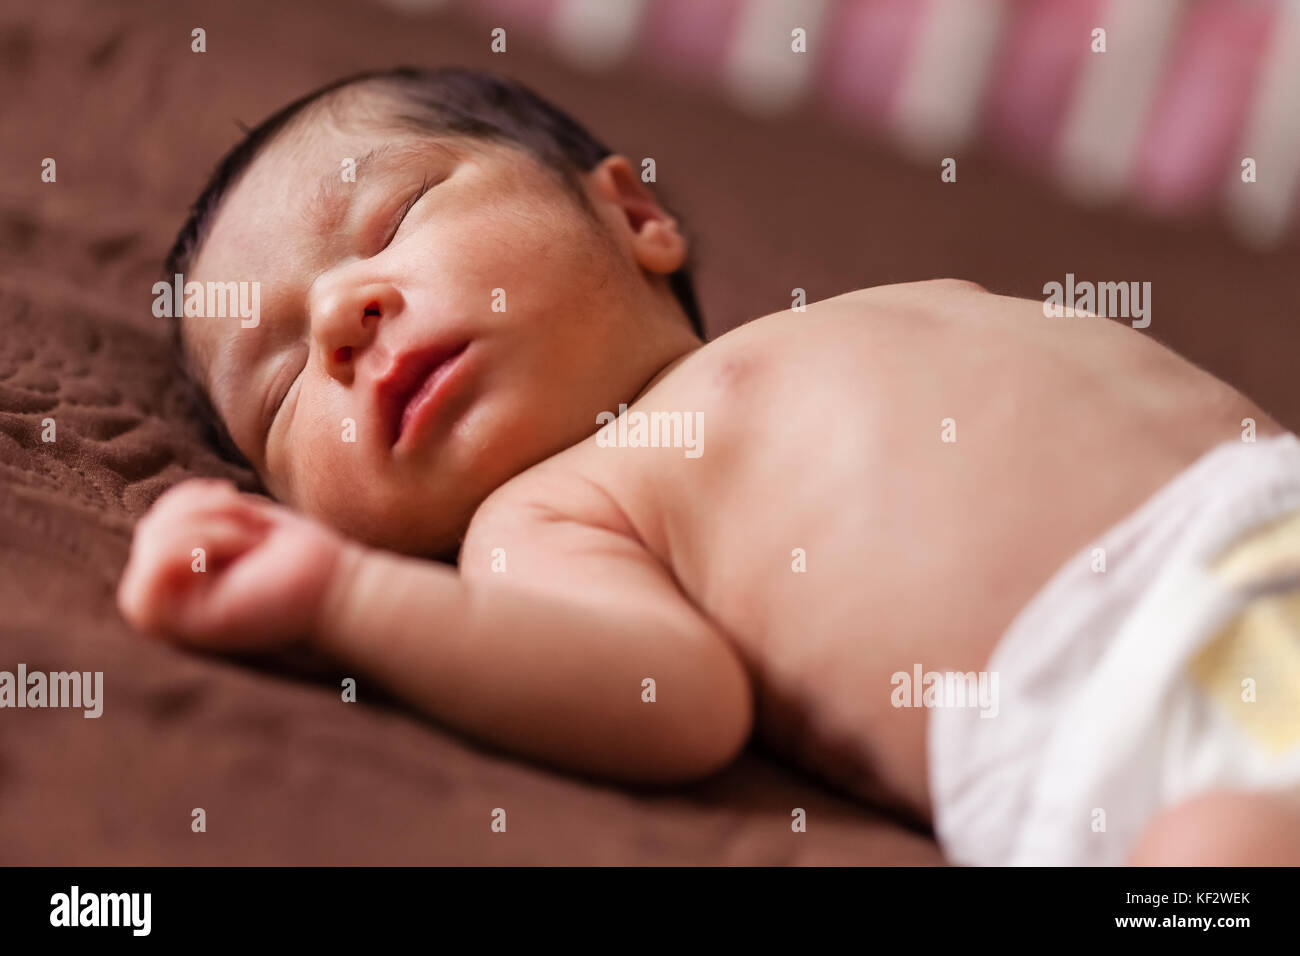 Une mignonne de deux semaines nouveau-né bébé fille sans vêtements, nu ou nu en utilisant un couches ou de couches, dormir paisiblement dans le lit / nouveau-né bébé fille sommeil Banque D'Images